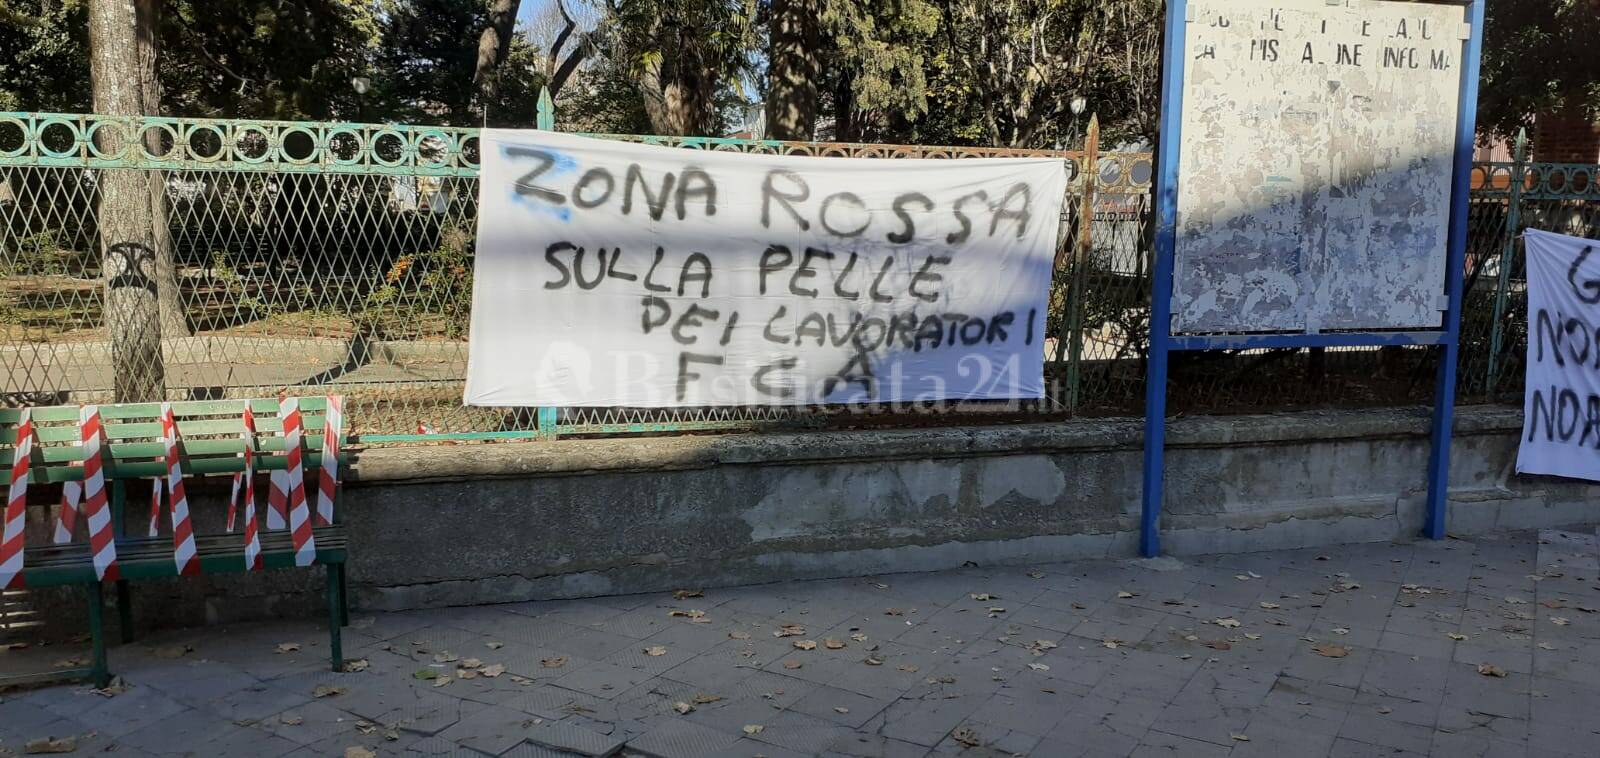 Coronavirus, a Genzano non si fermano le proteste per la zona rossa: oltre 300 operai bloccati